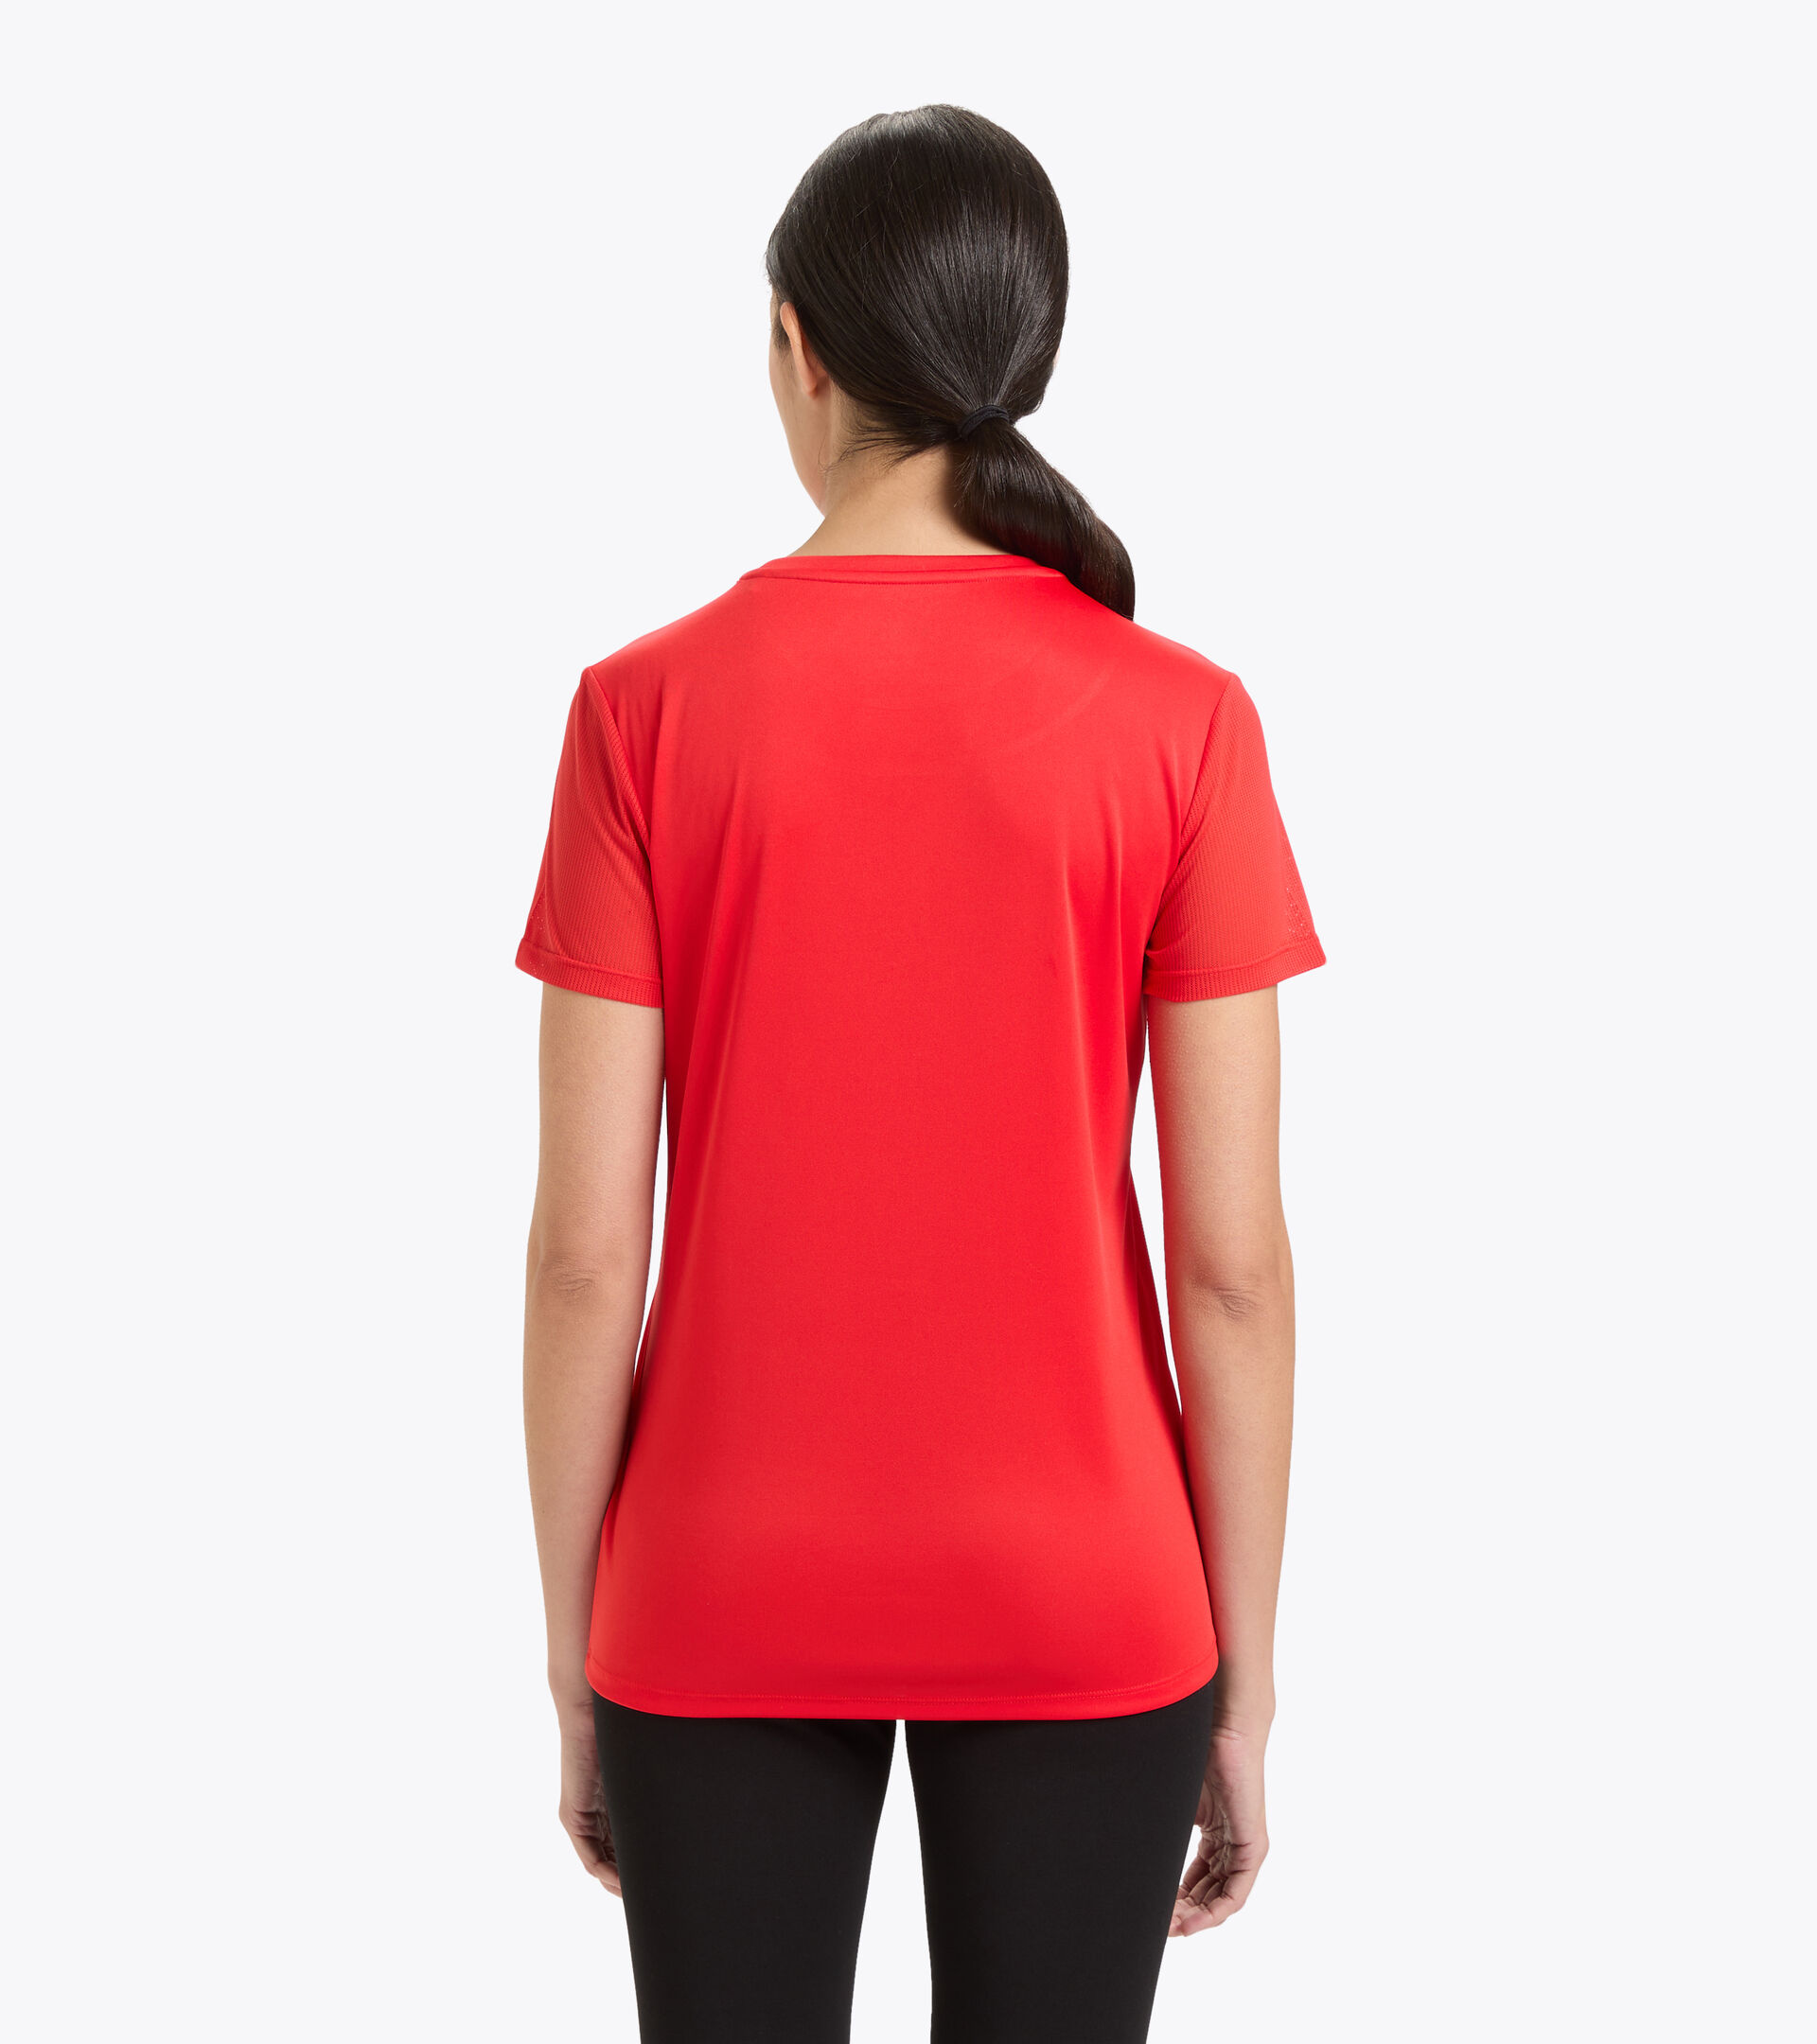 Lauf-T-Shirt aus Polyester - Damen L. SS CORE TEE FEUERROT - Diadora